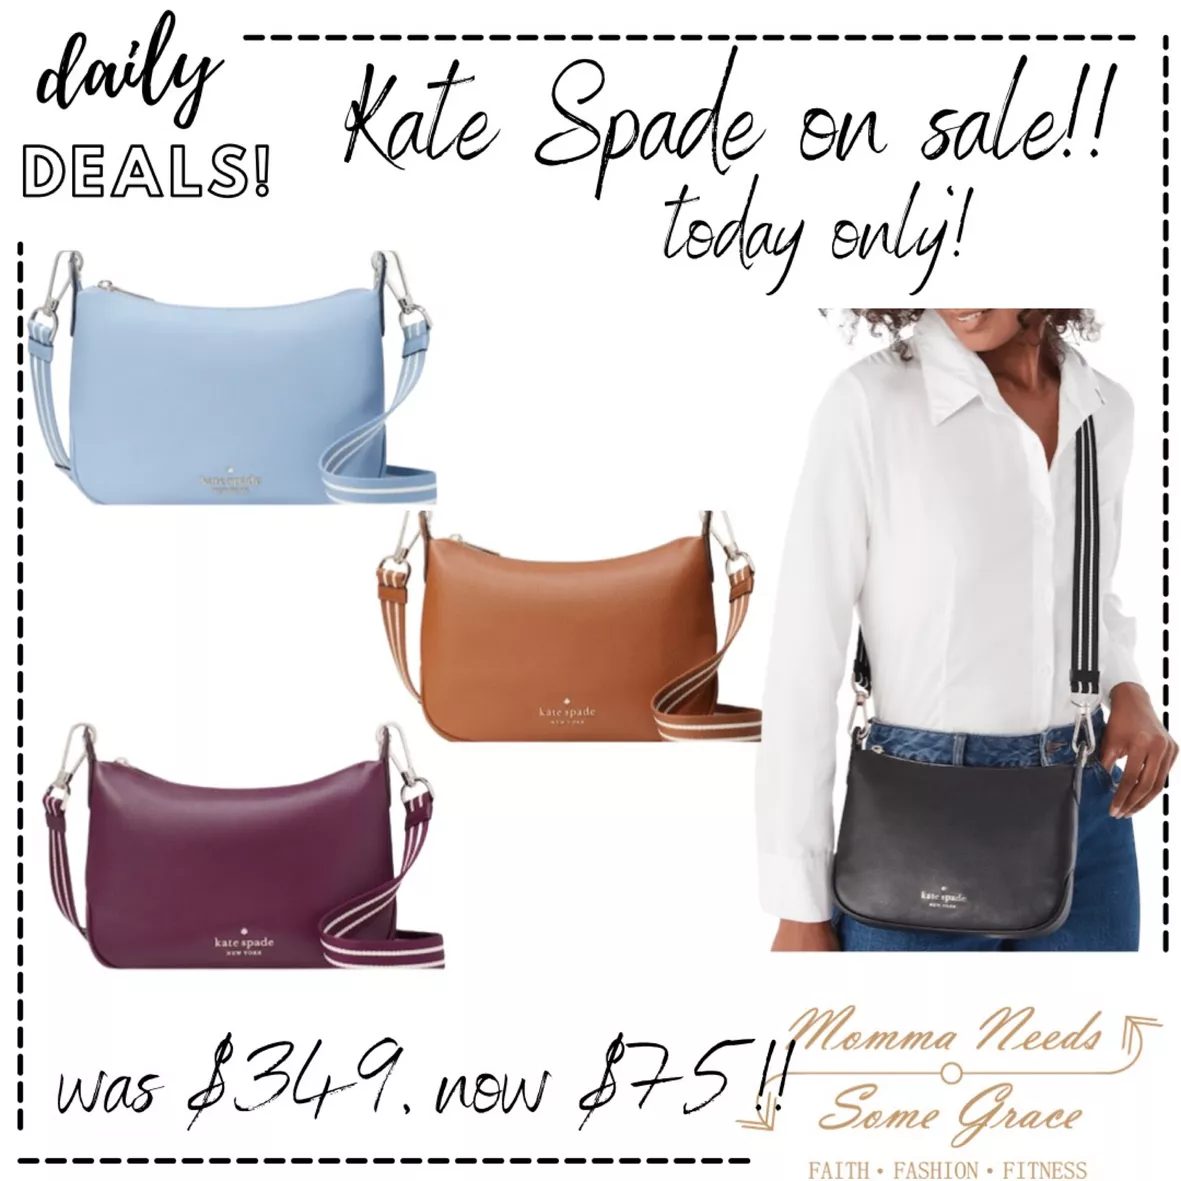 Kate Spade Rosie Belt Bag